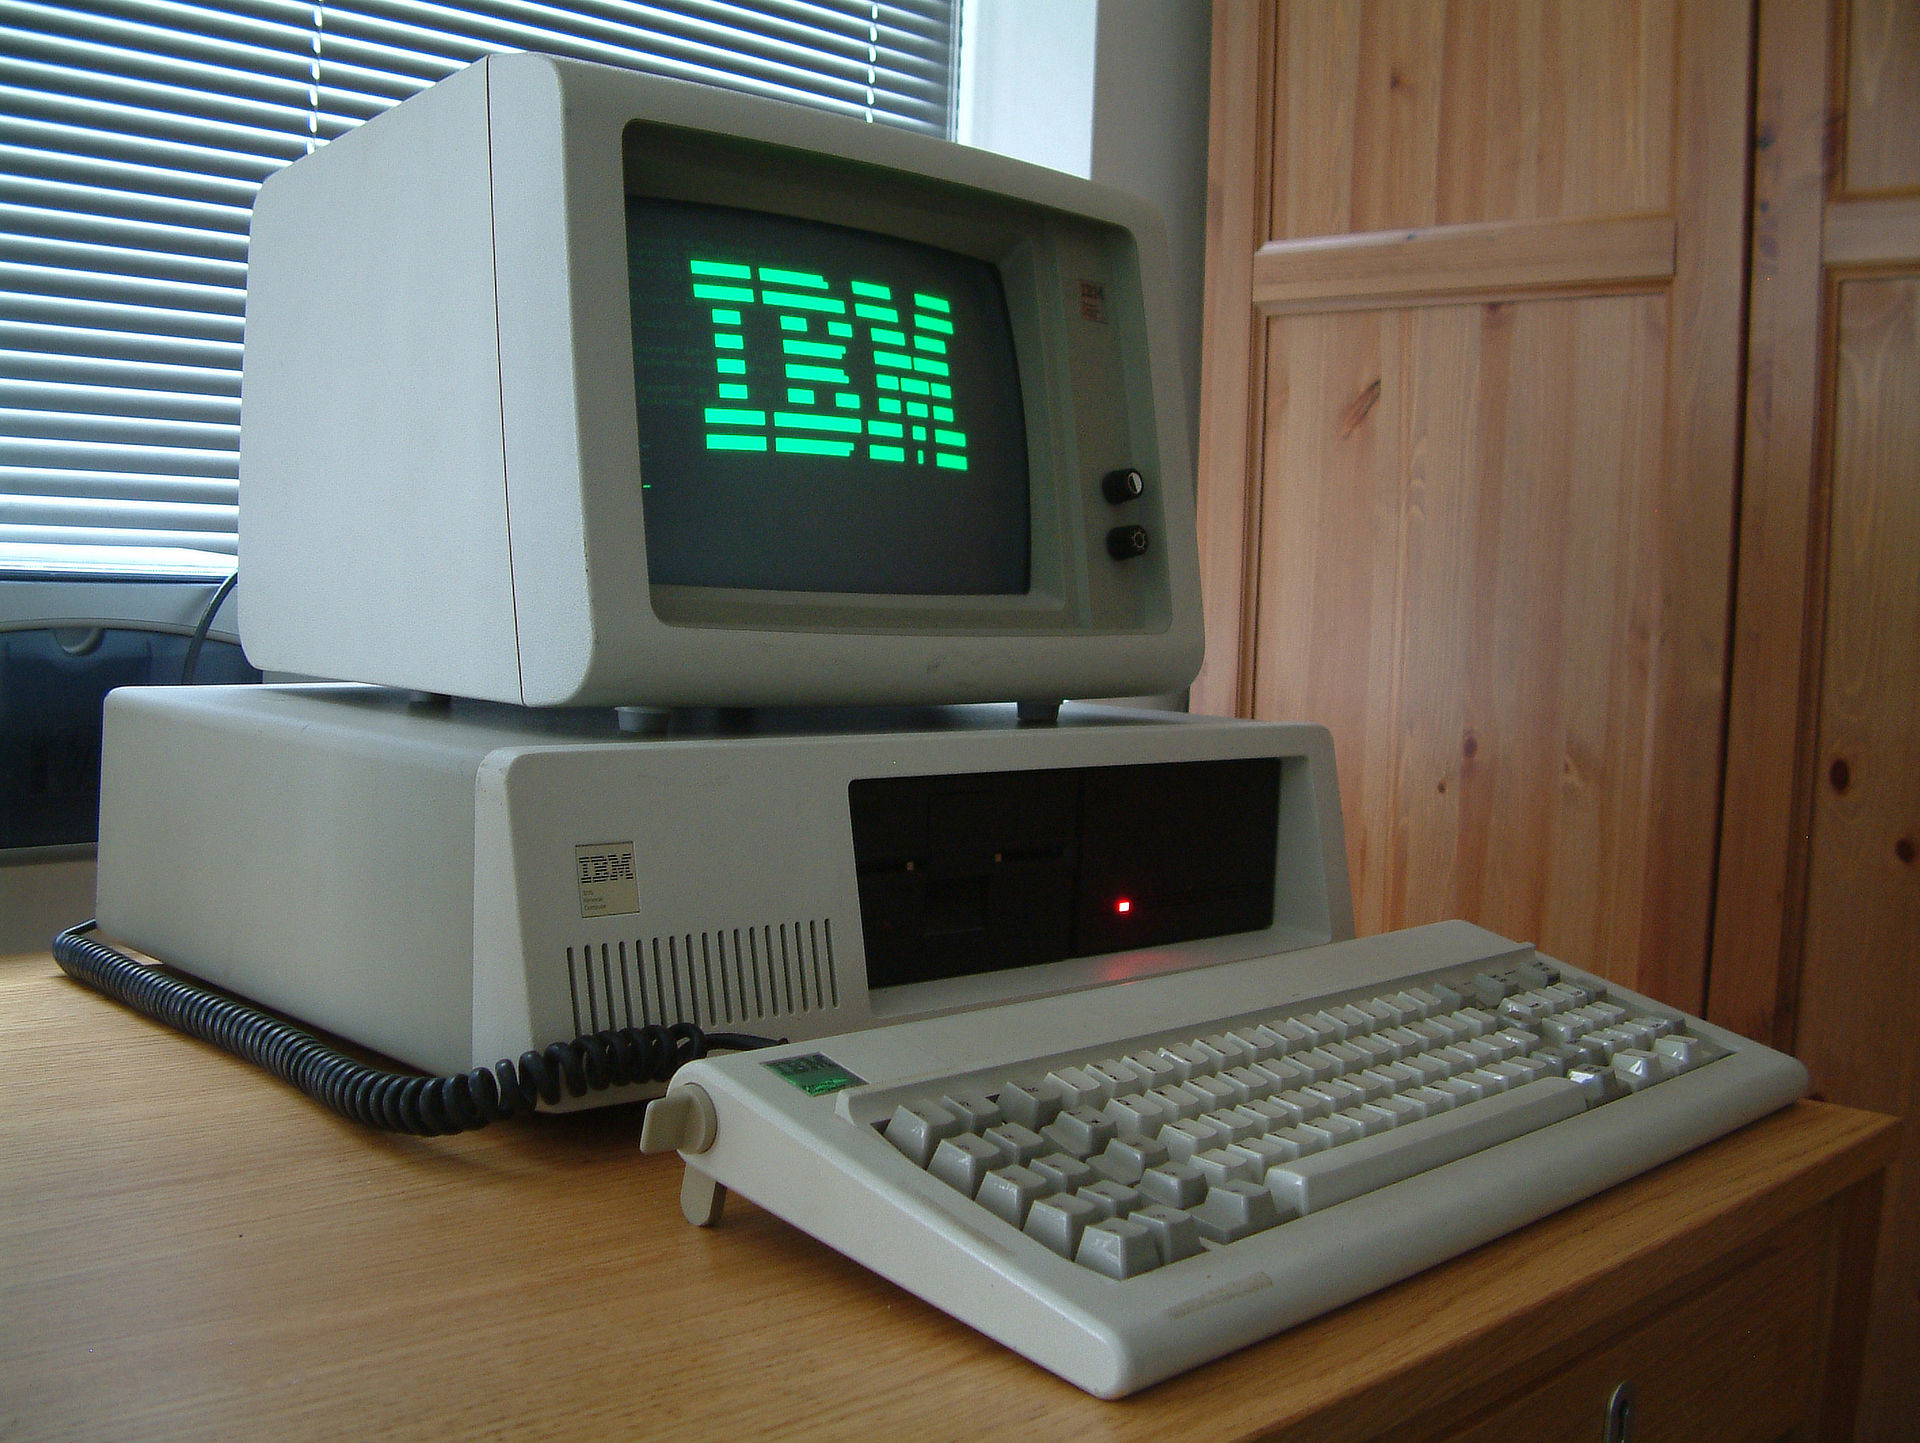 Le premier PC IBM fête ses 40 ans cette année